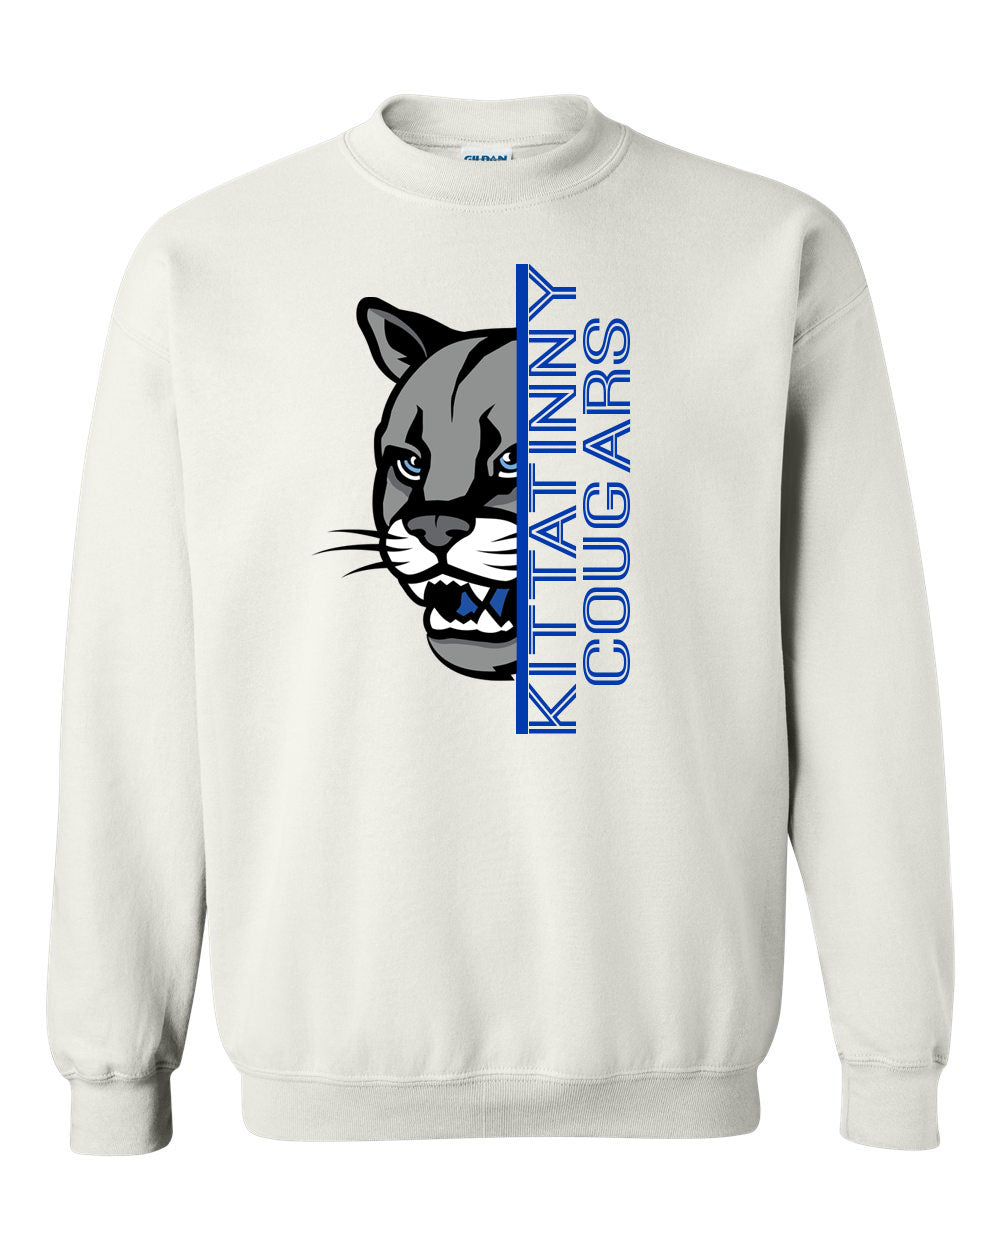 KRHS Design 3 non hooded sweatshirt